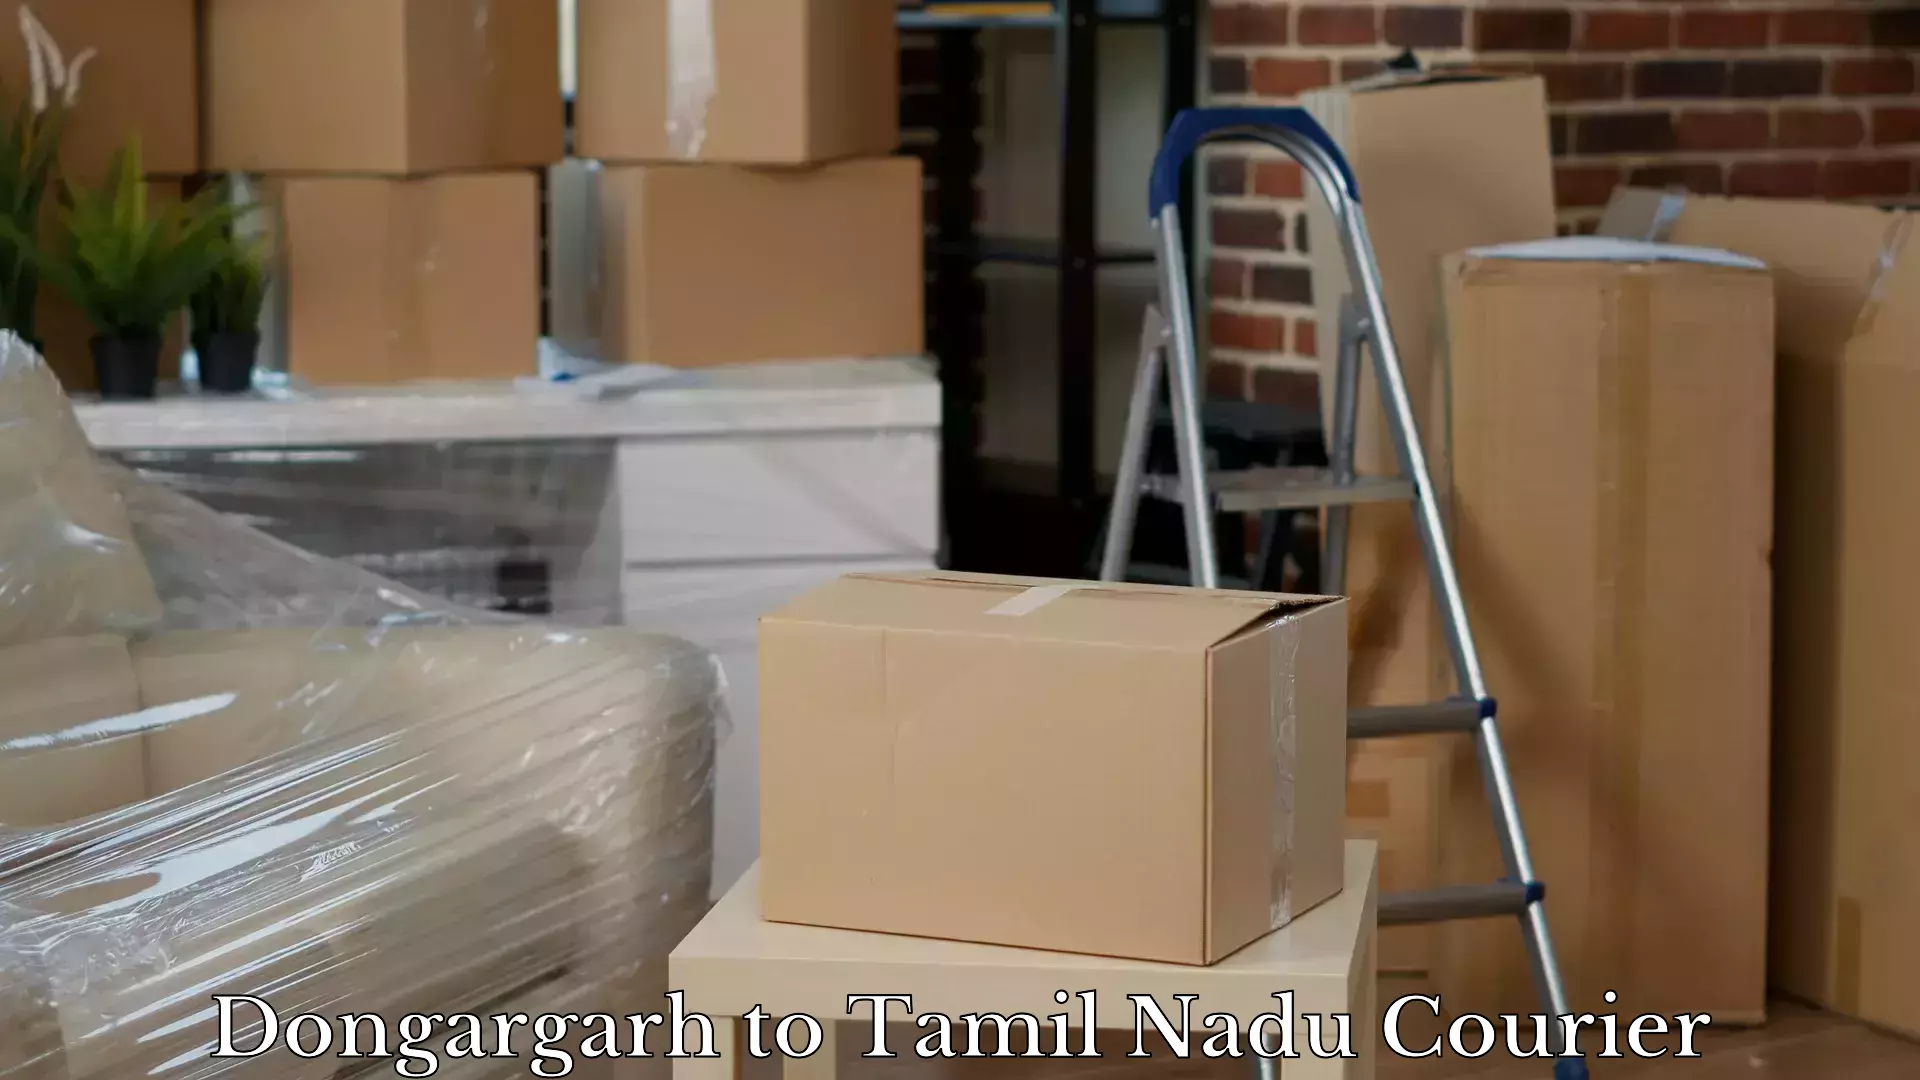 Baggage shipping service Dongargarh to Karambakkudi